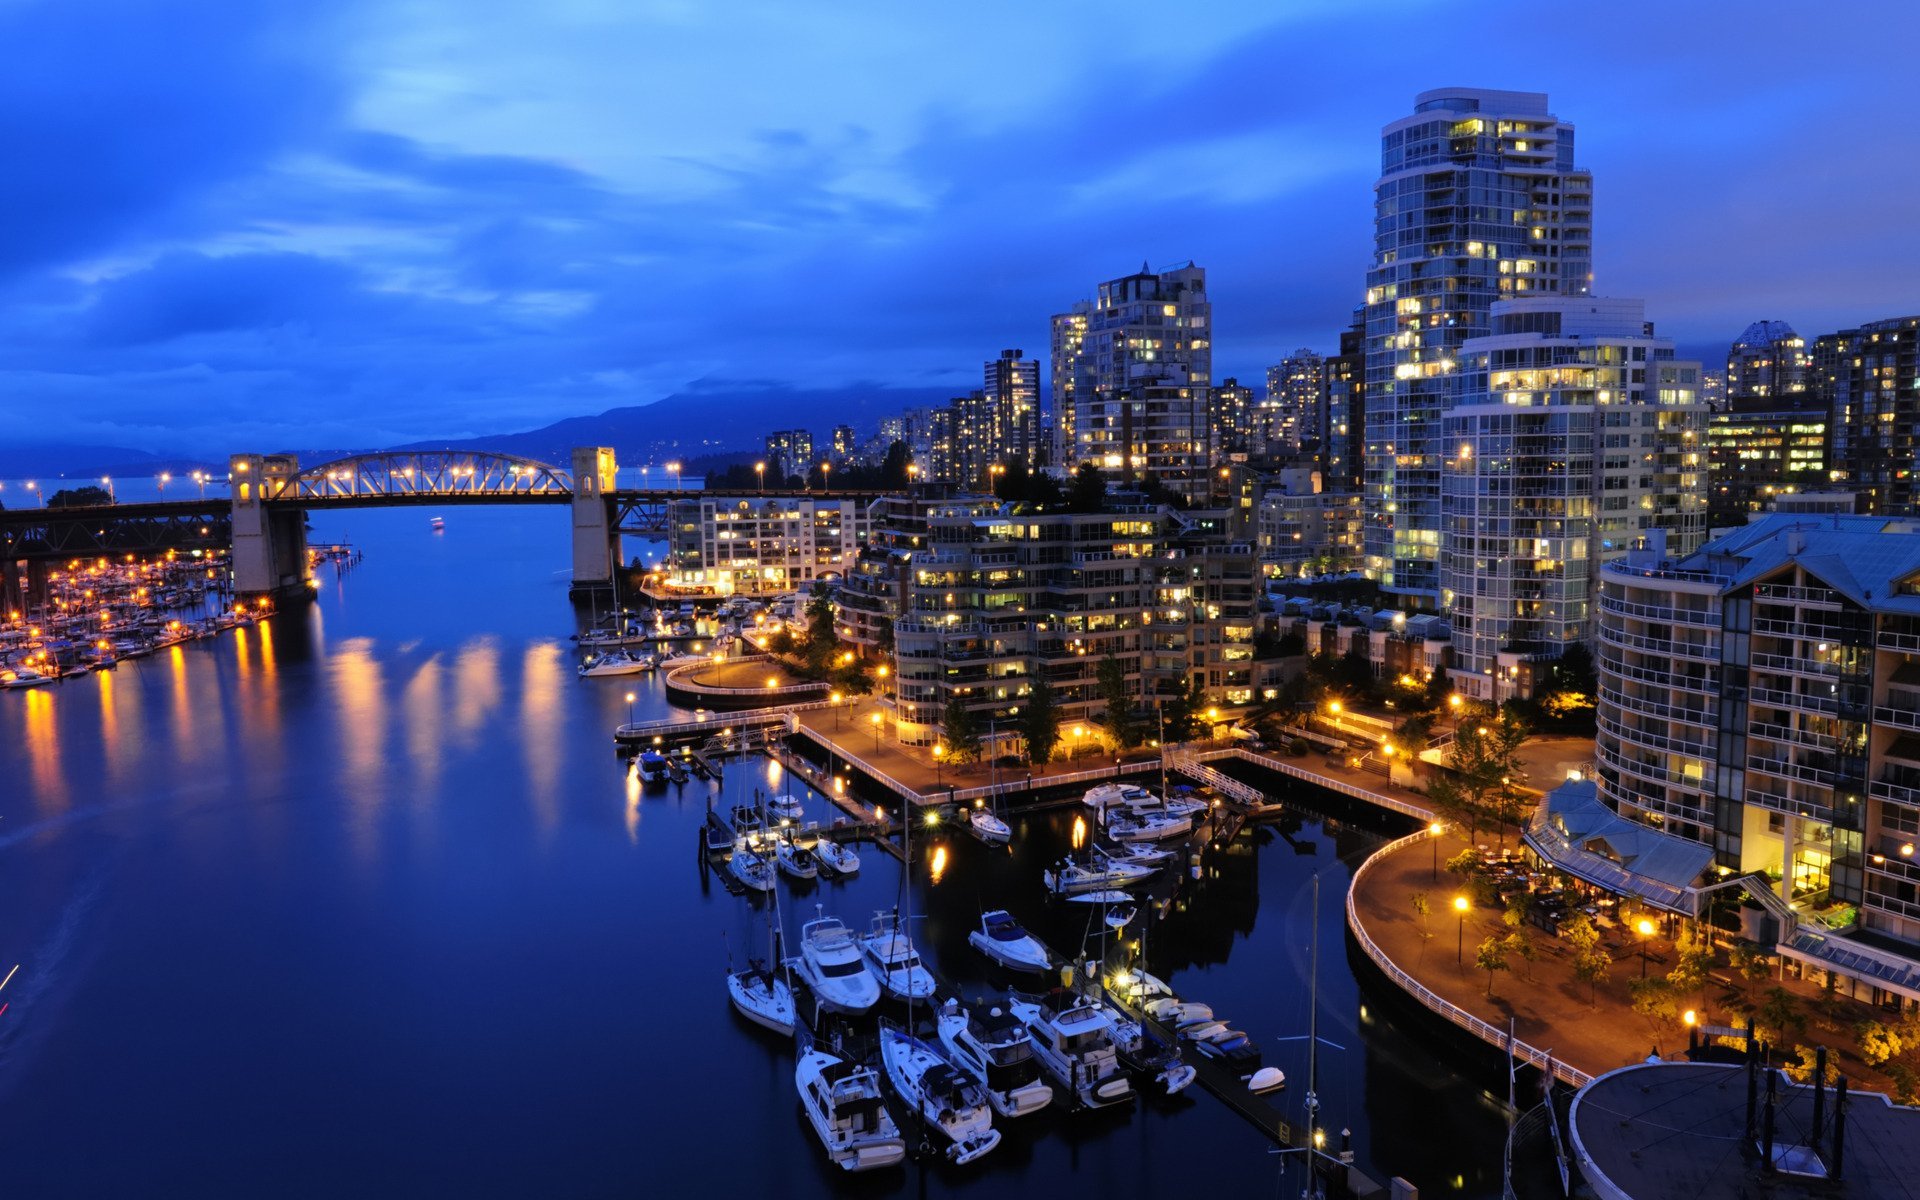 Красивые фотки городов. Ванкувер Канада. Ванкувер Канада океан. Ванкувер набережная. Ночной город.